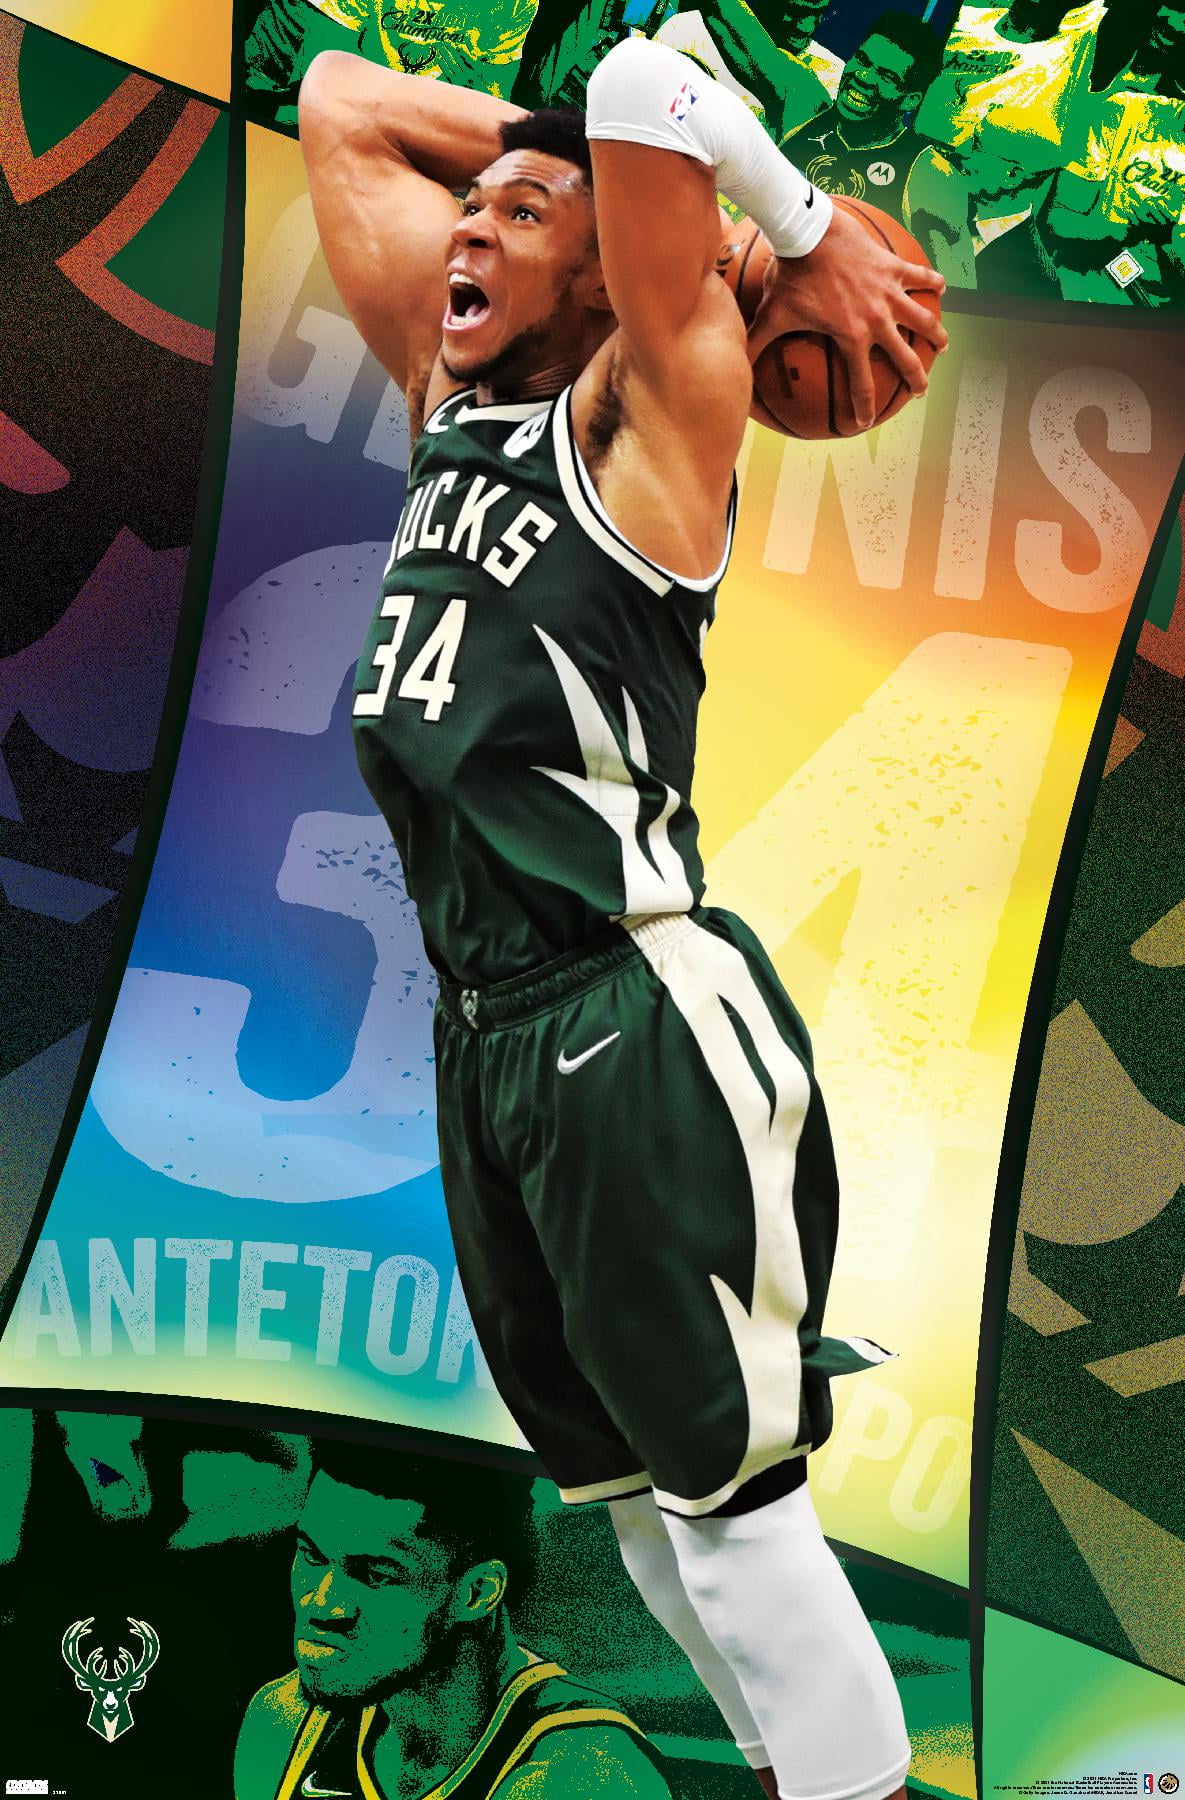 Giannis Antetokounmpo NBA HD Poster Print A4 size (21x30cm) by